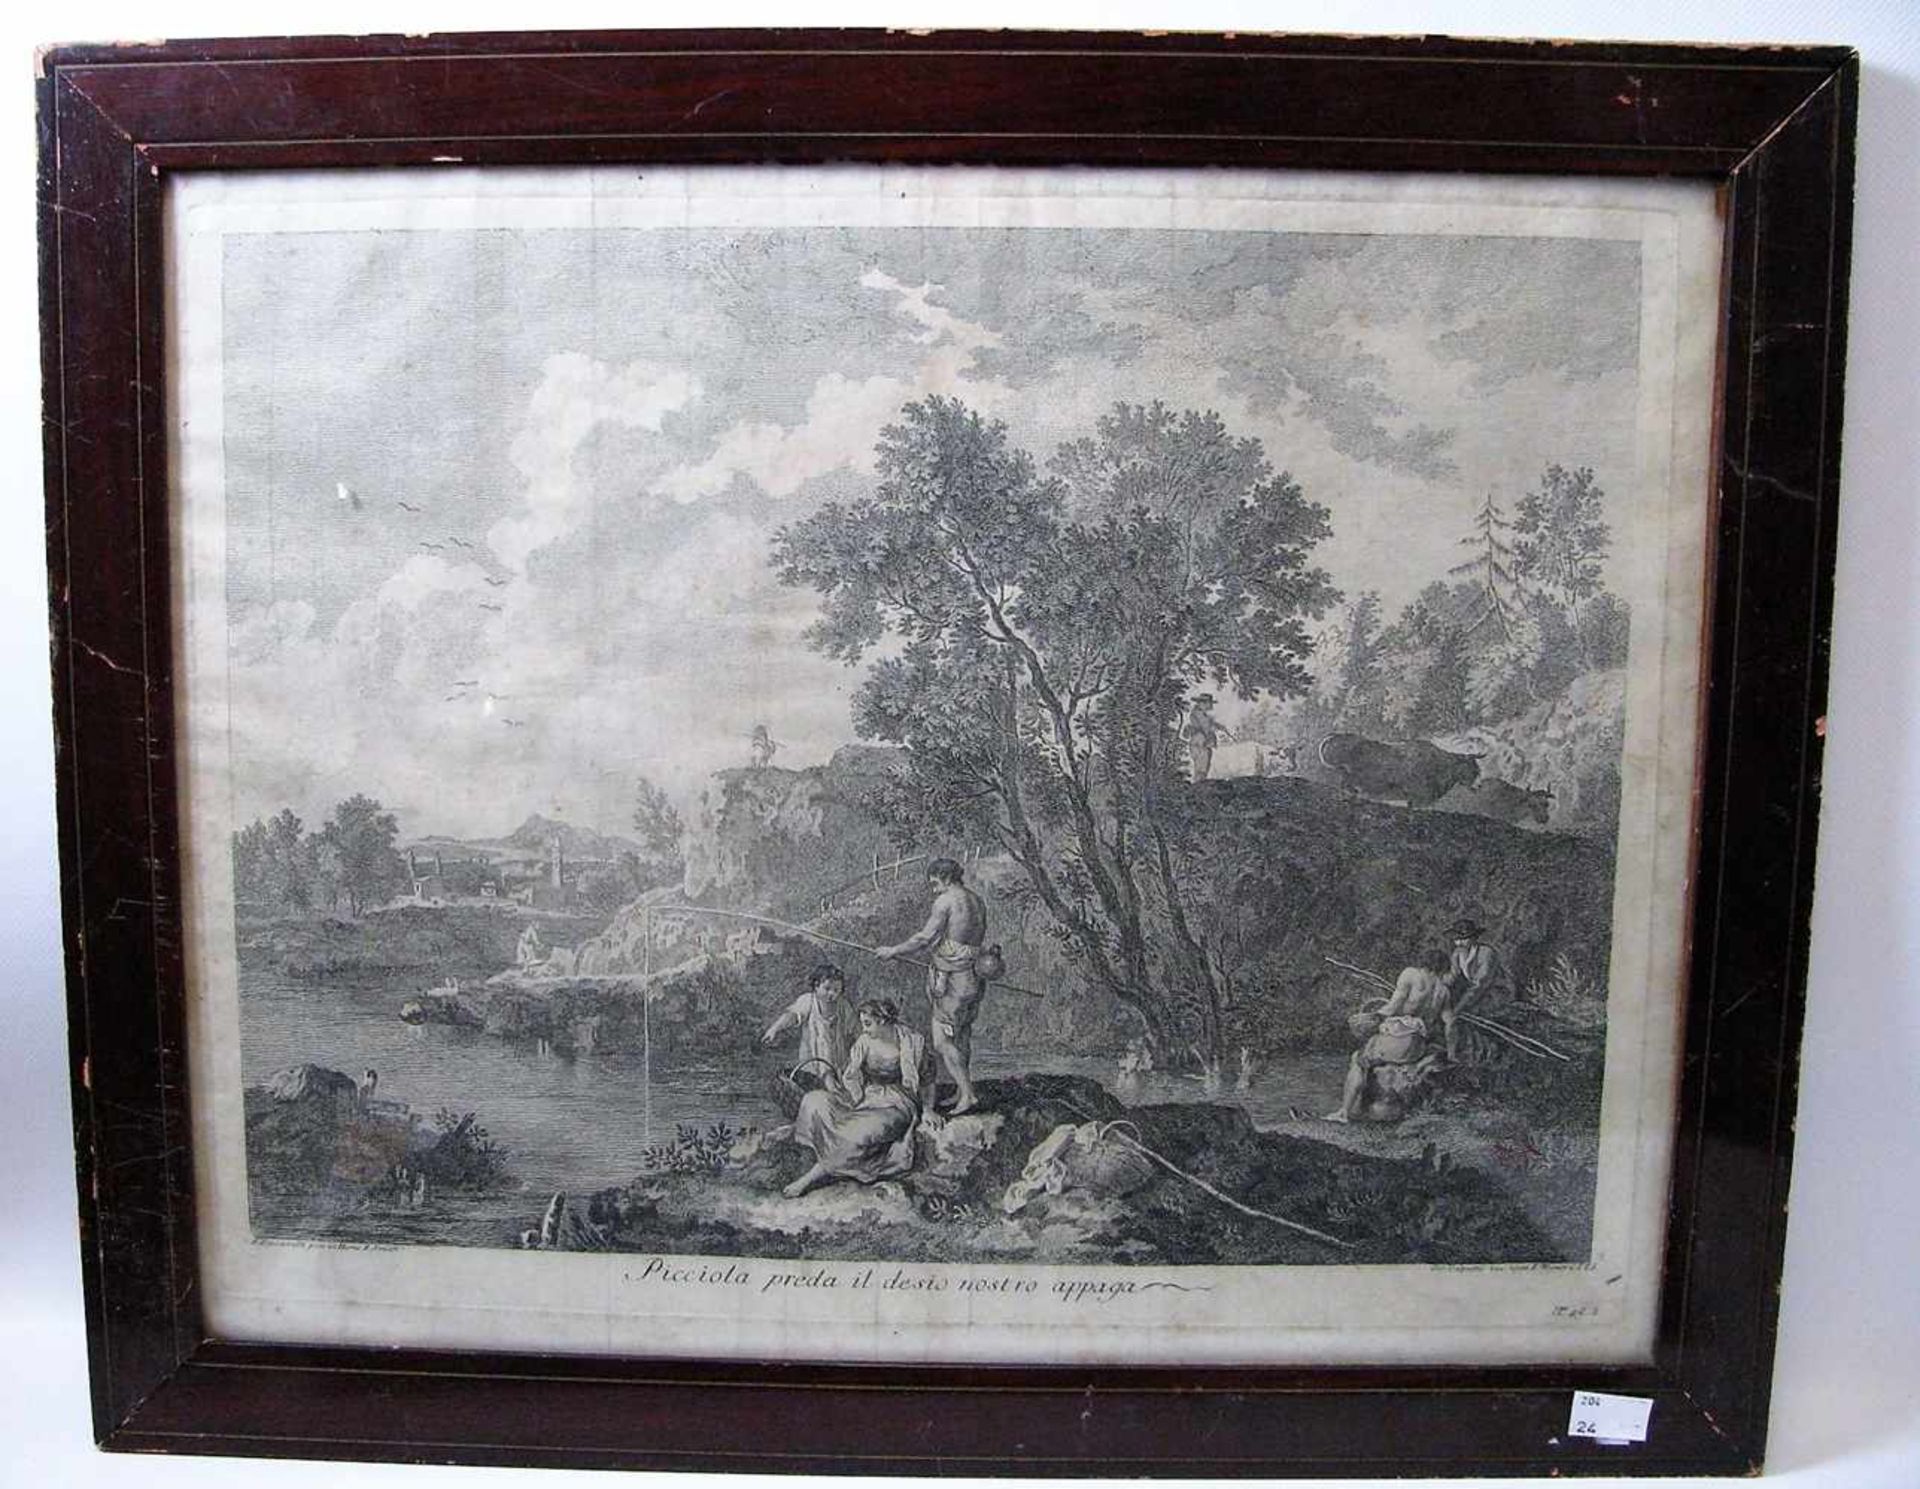 Zucarelli, F., 18. Jahrhundert, "Gesellschaft am Fluss", Radierung, 33 x 44 cm, R.- - -19.00 %